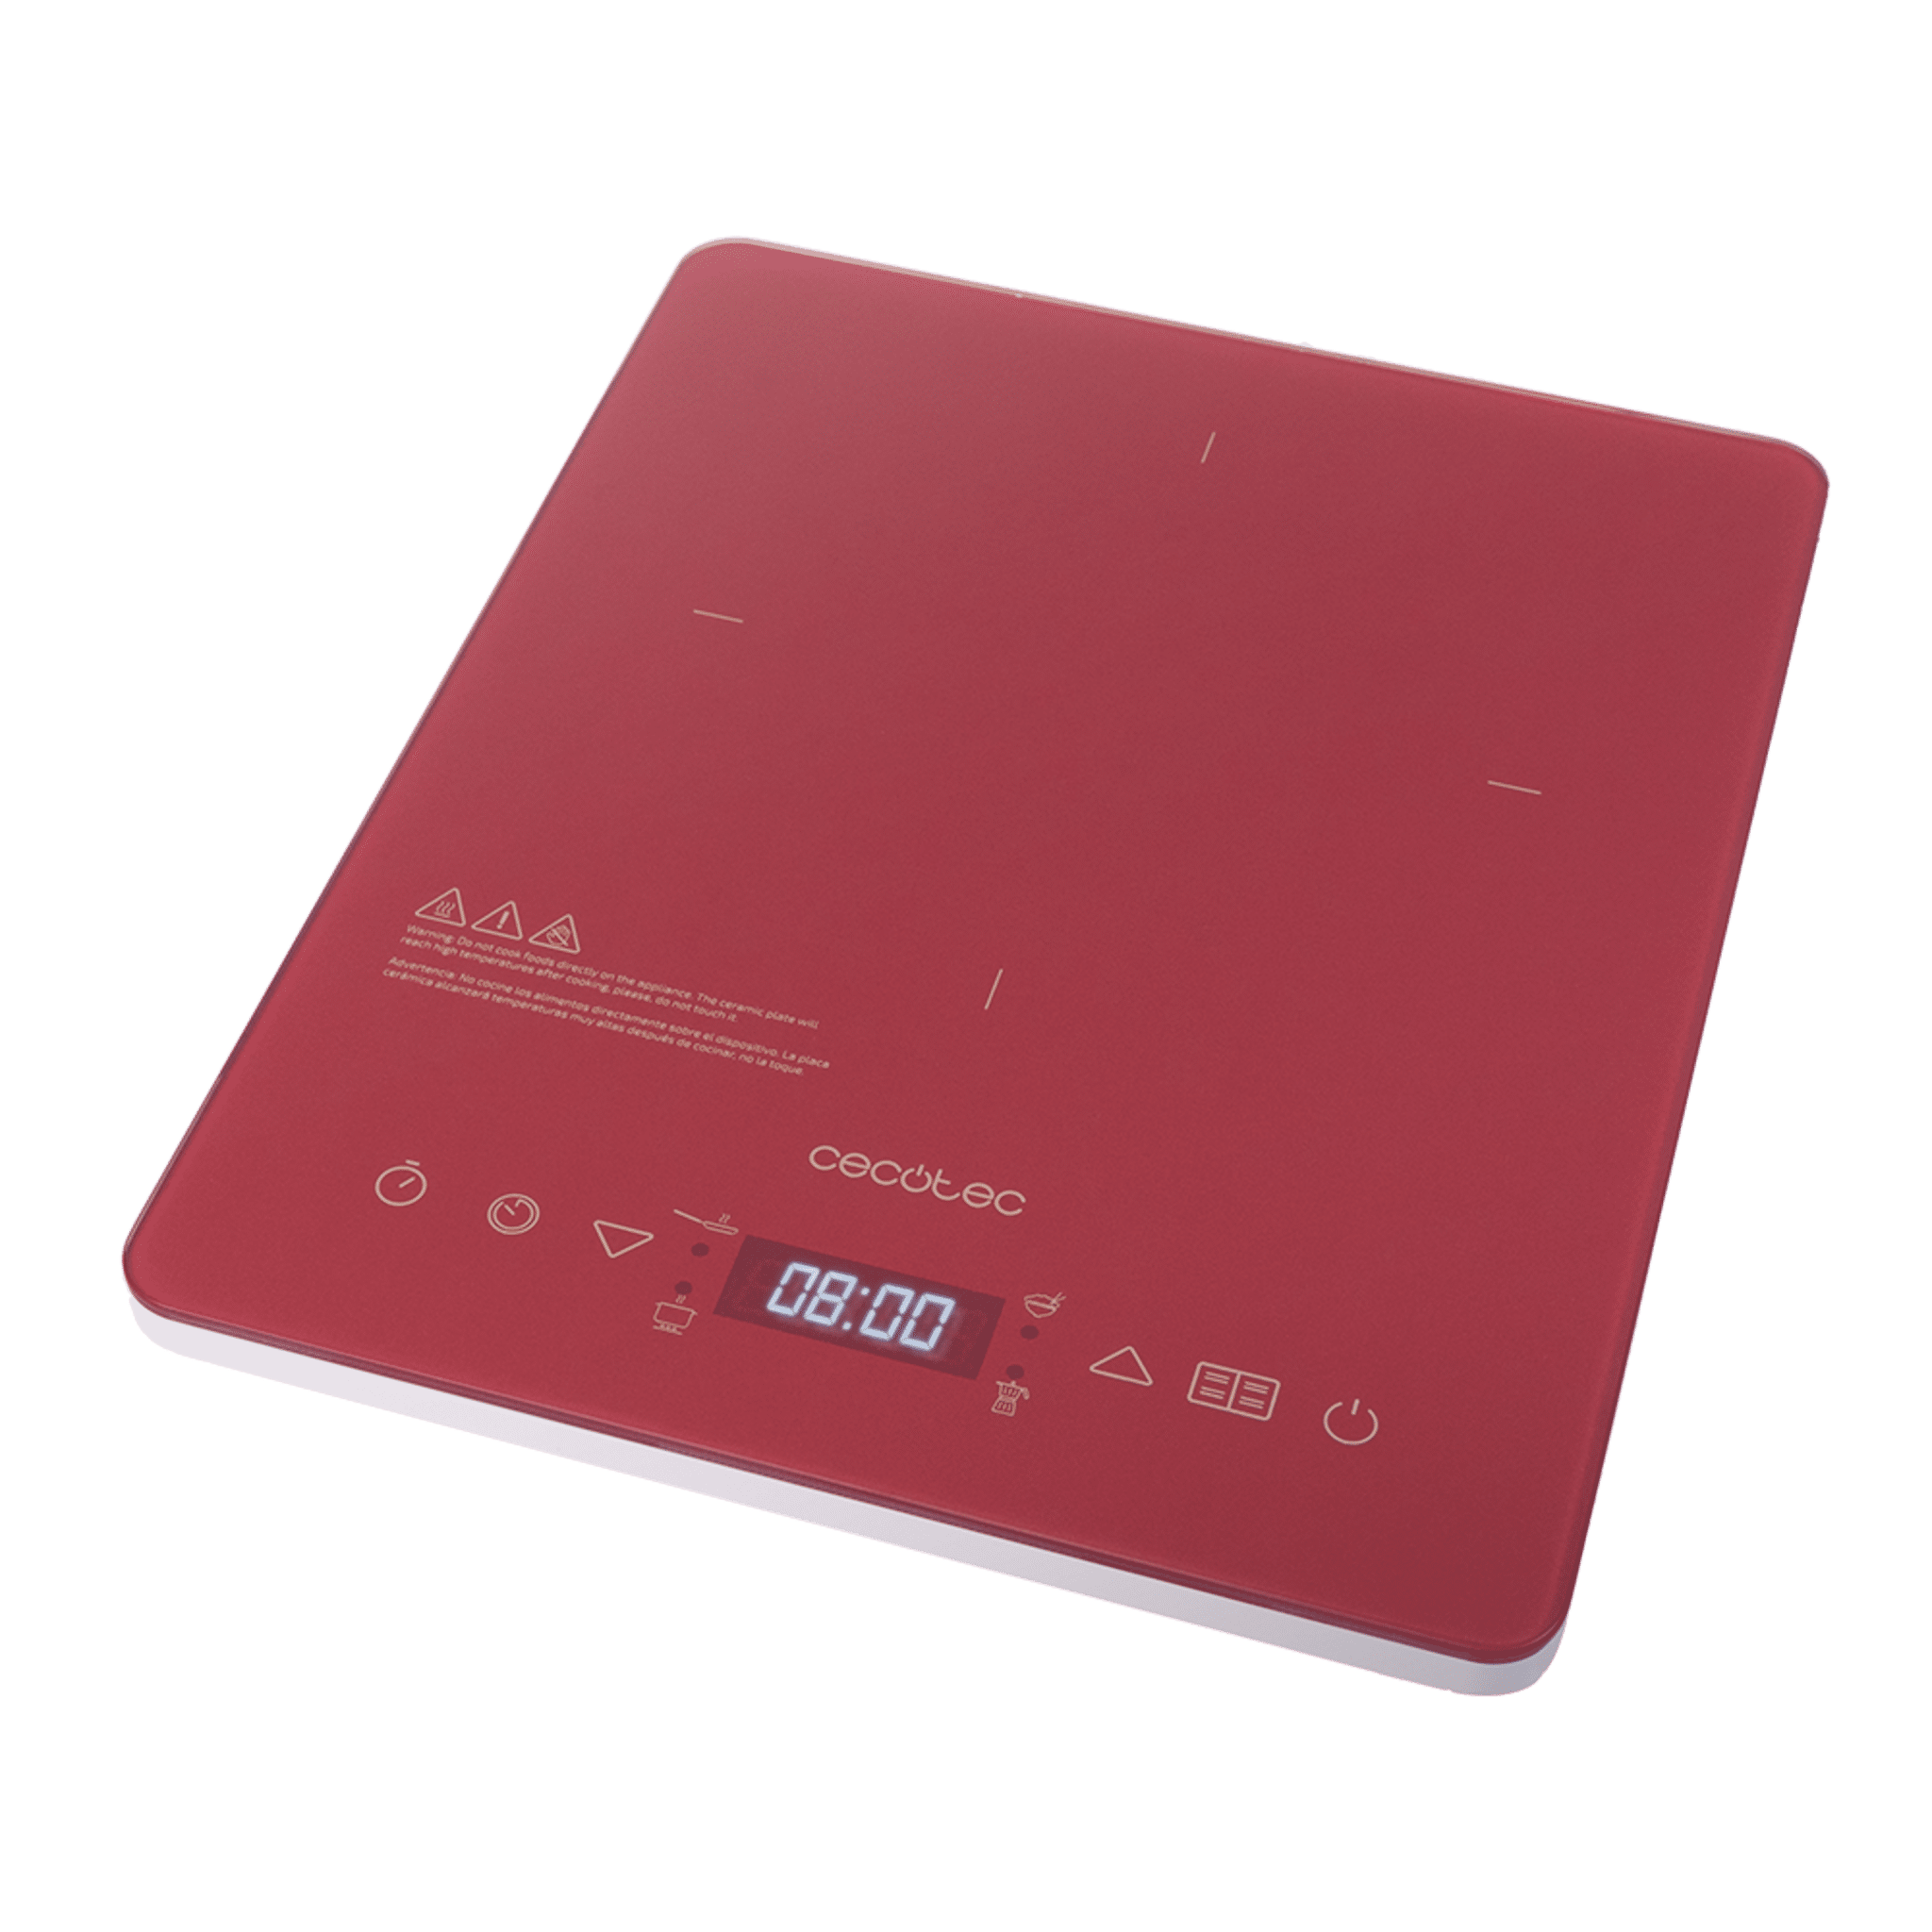 Tragbare Induktionsplatte Full Crystal Scarlet Leistung 2000 W, einstellbare Temperatur, 4 voreingestellte Programme, Timer, Bratpfannen bis zu 28 cm